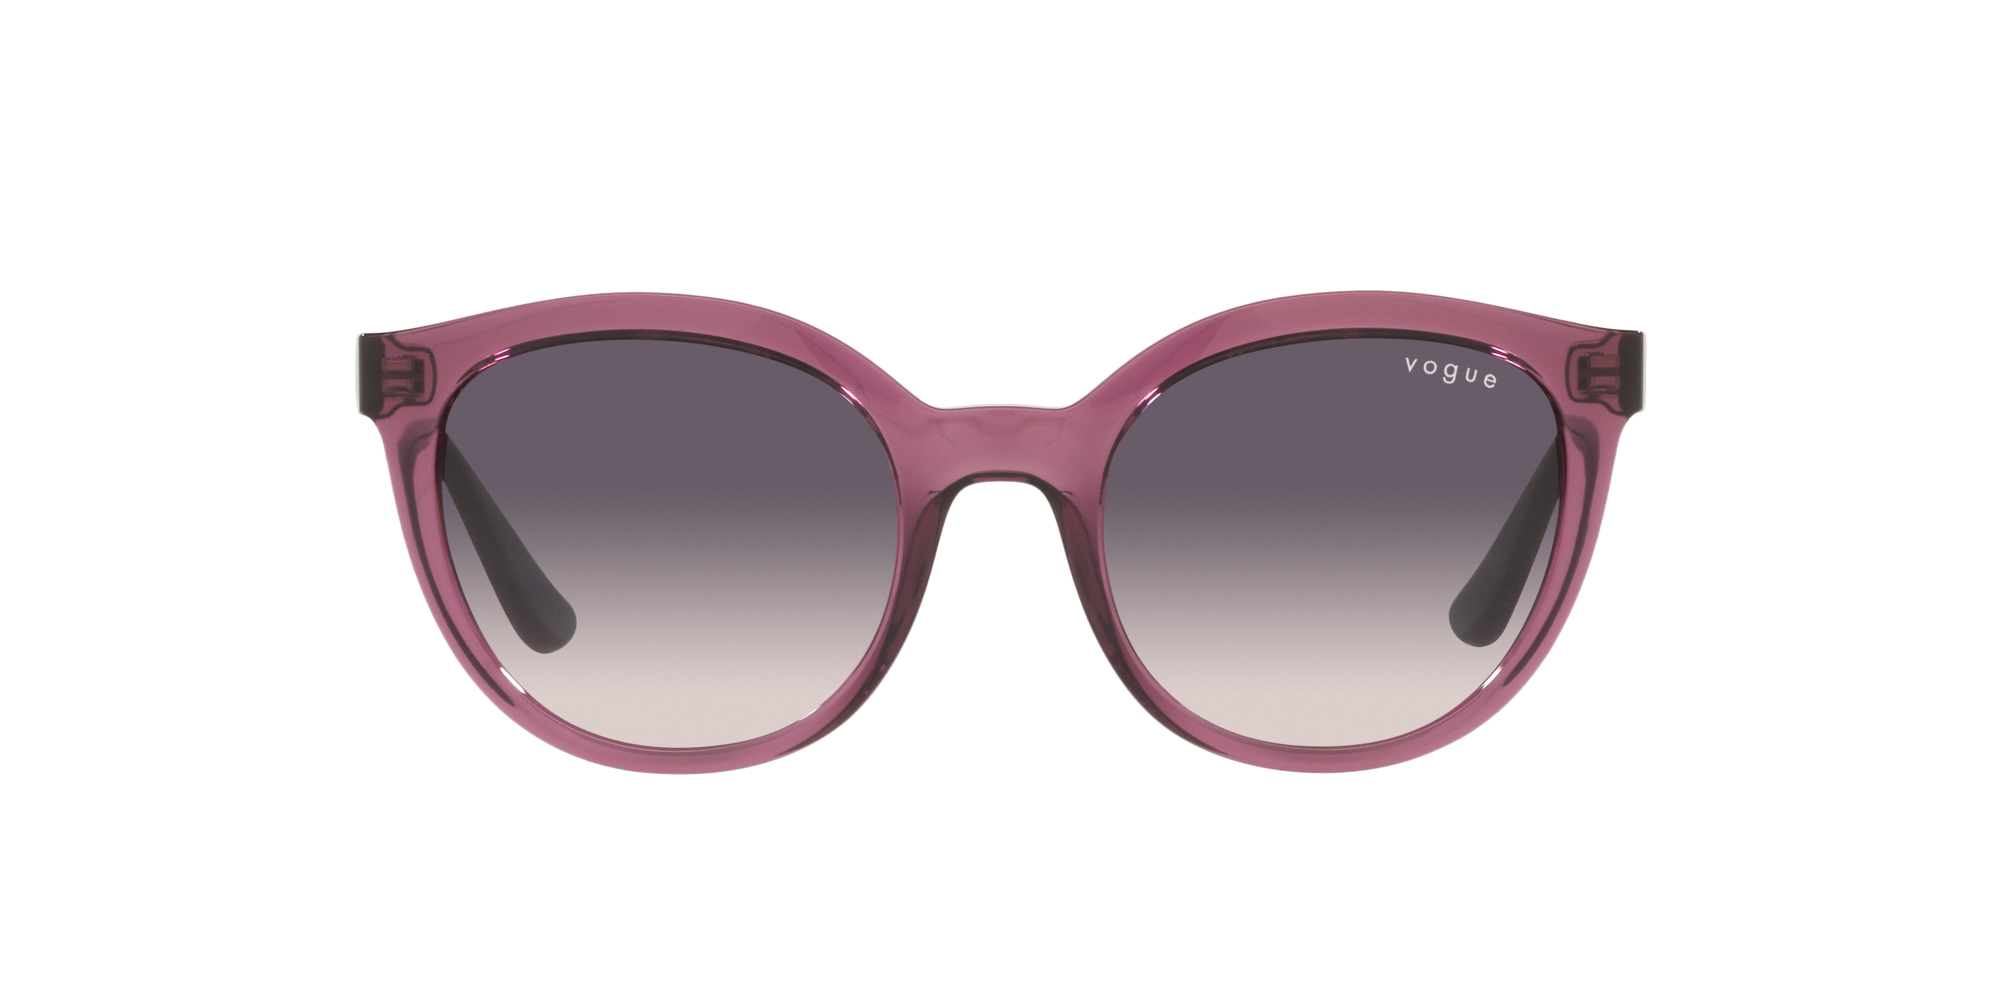 Vogue Sonnenbrille in Rosa/Schwarz VO5427S 276136 50